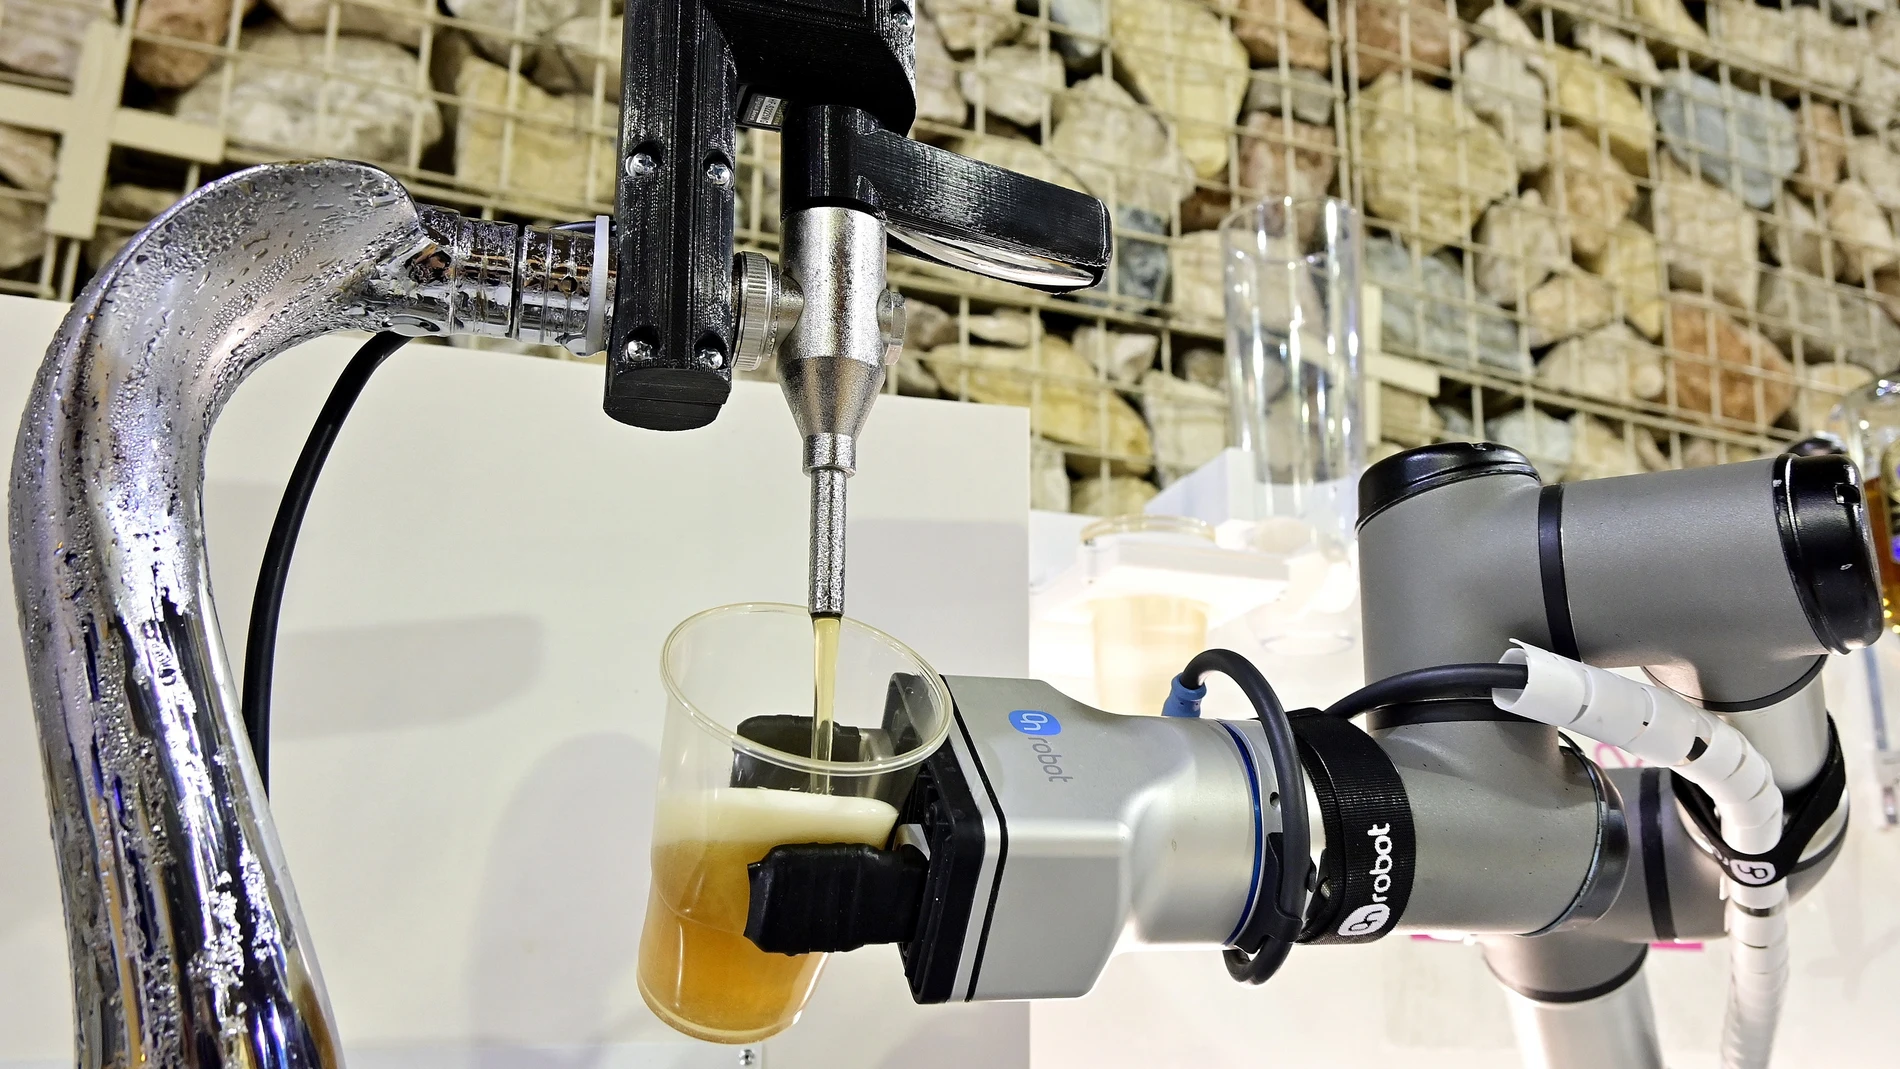 Un brazo robotizado sirve un vaso de cerveza como muestra de una de las alternativas que se ofrecen en el Salón de Innovación de la Hostelería "H&T" en Málaga. EFE / Jorge Zapata